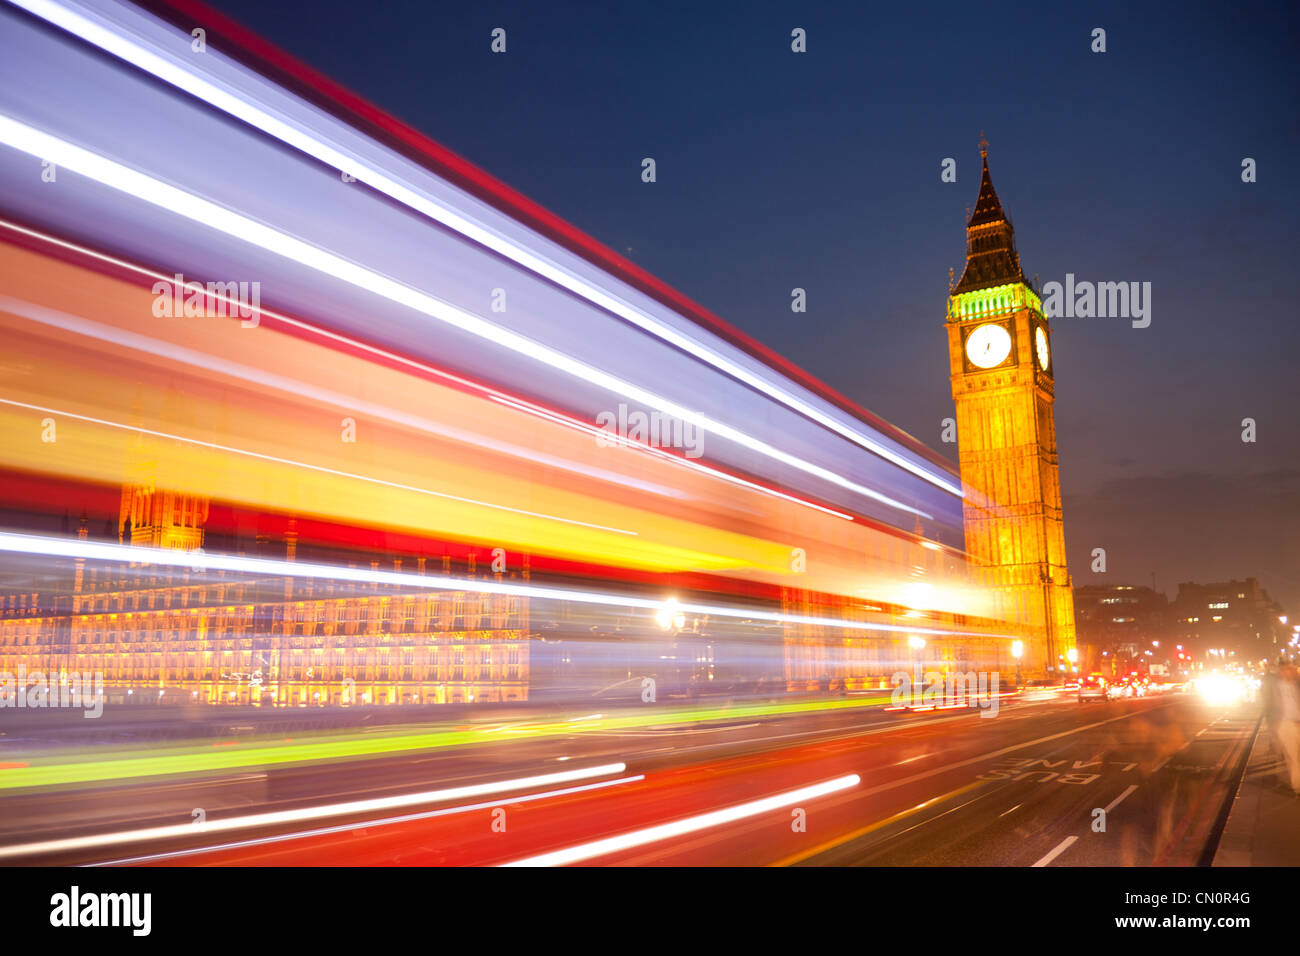 Big Ben Clock Tower Chambres du Parlement de nuit avec lumières floues de passer en premier plan bus red London London England UK Banque D'Images